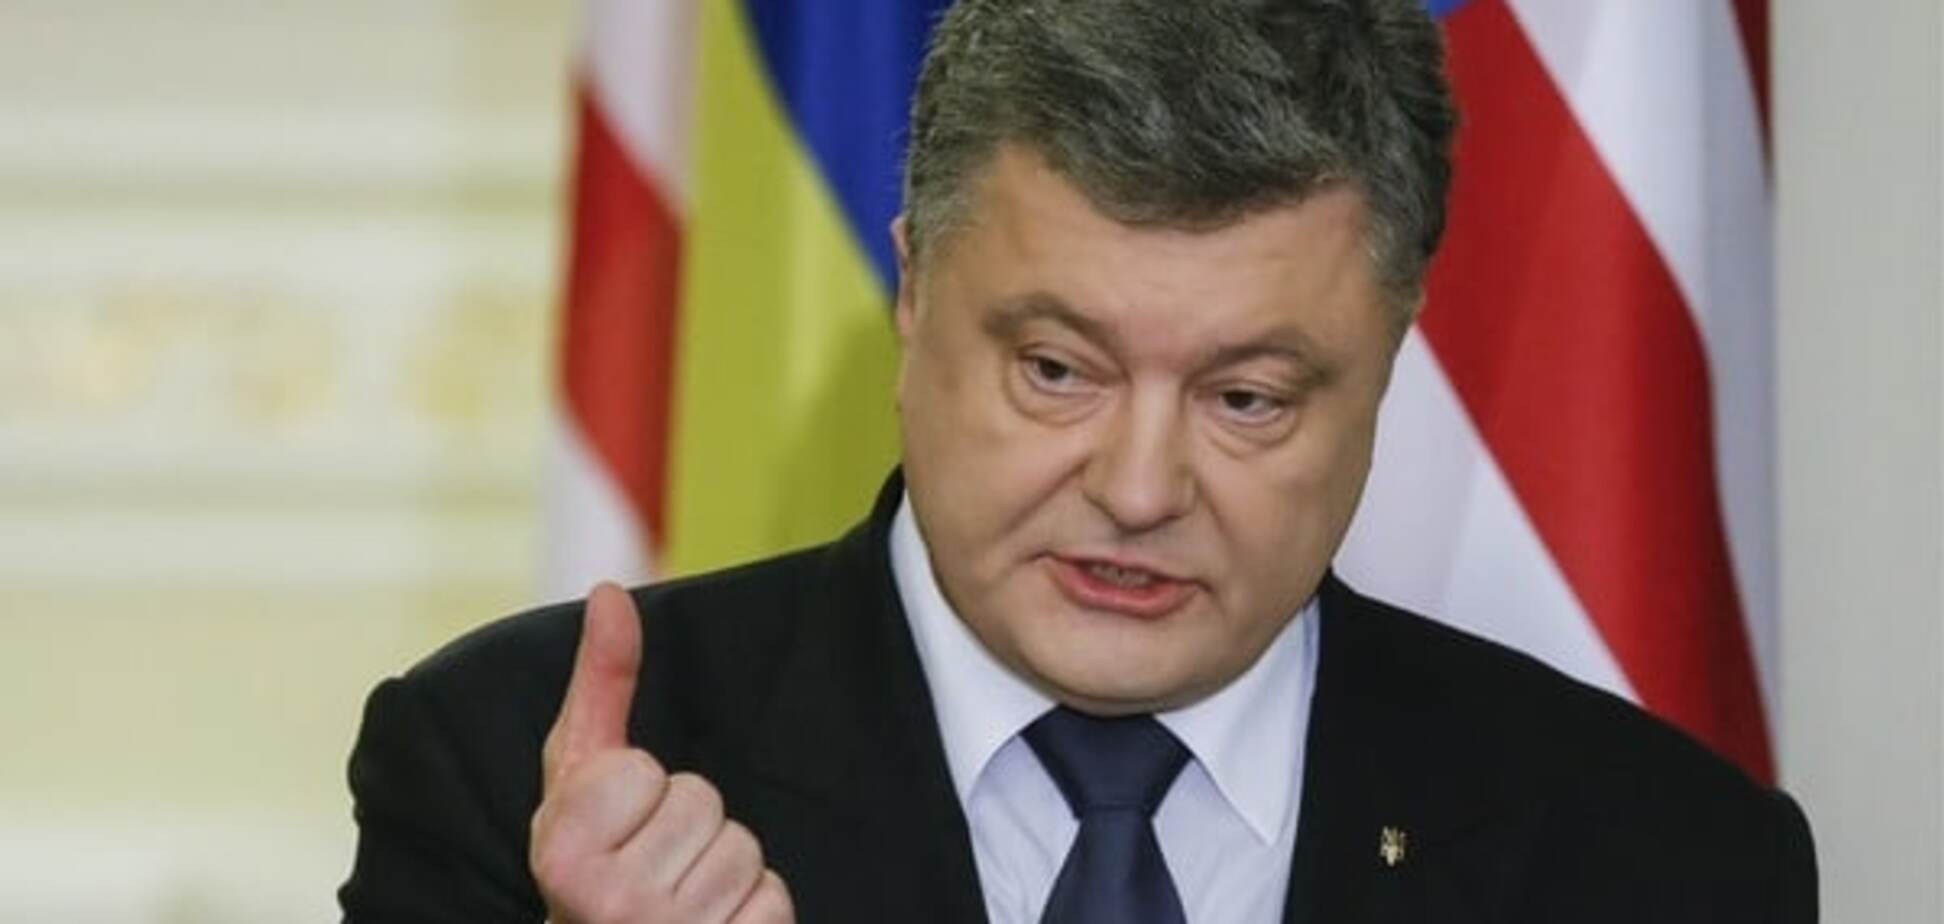 Агрессия России не оправдывает отсутствие реформ в Украине - Порошенко   